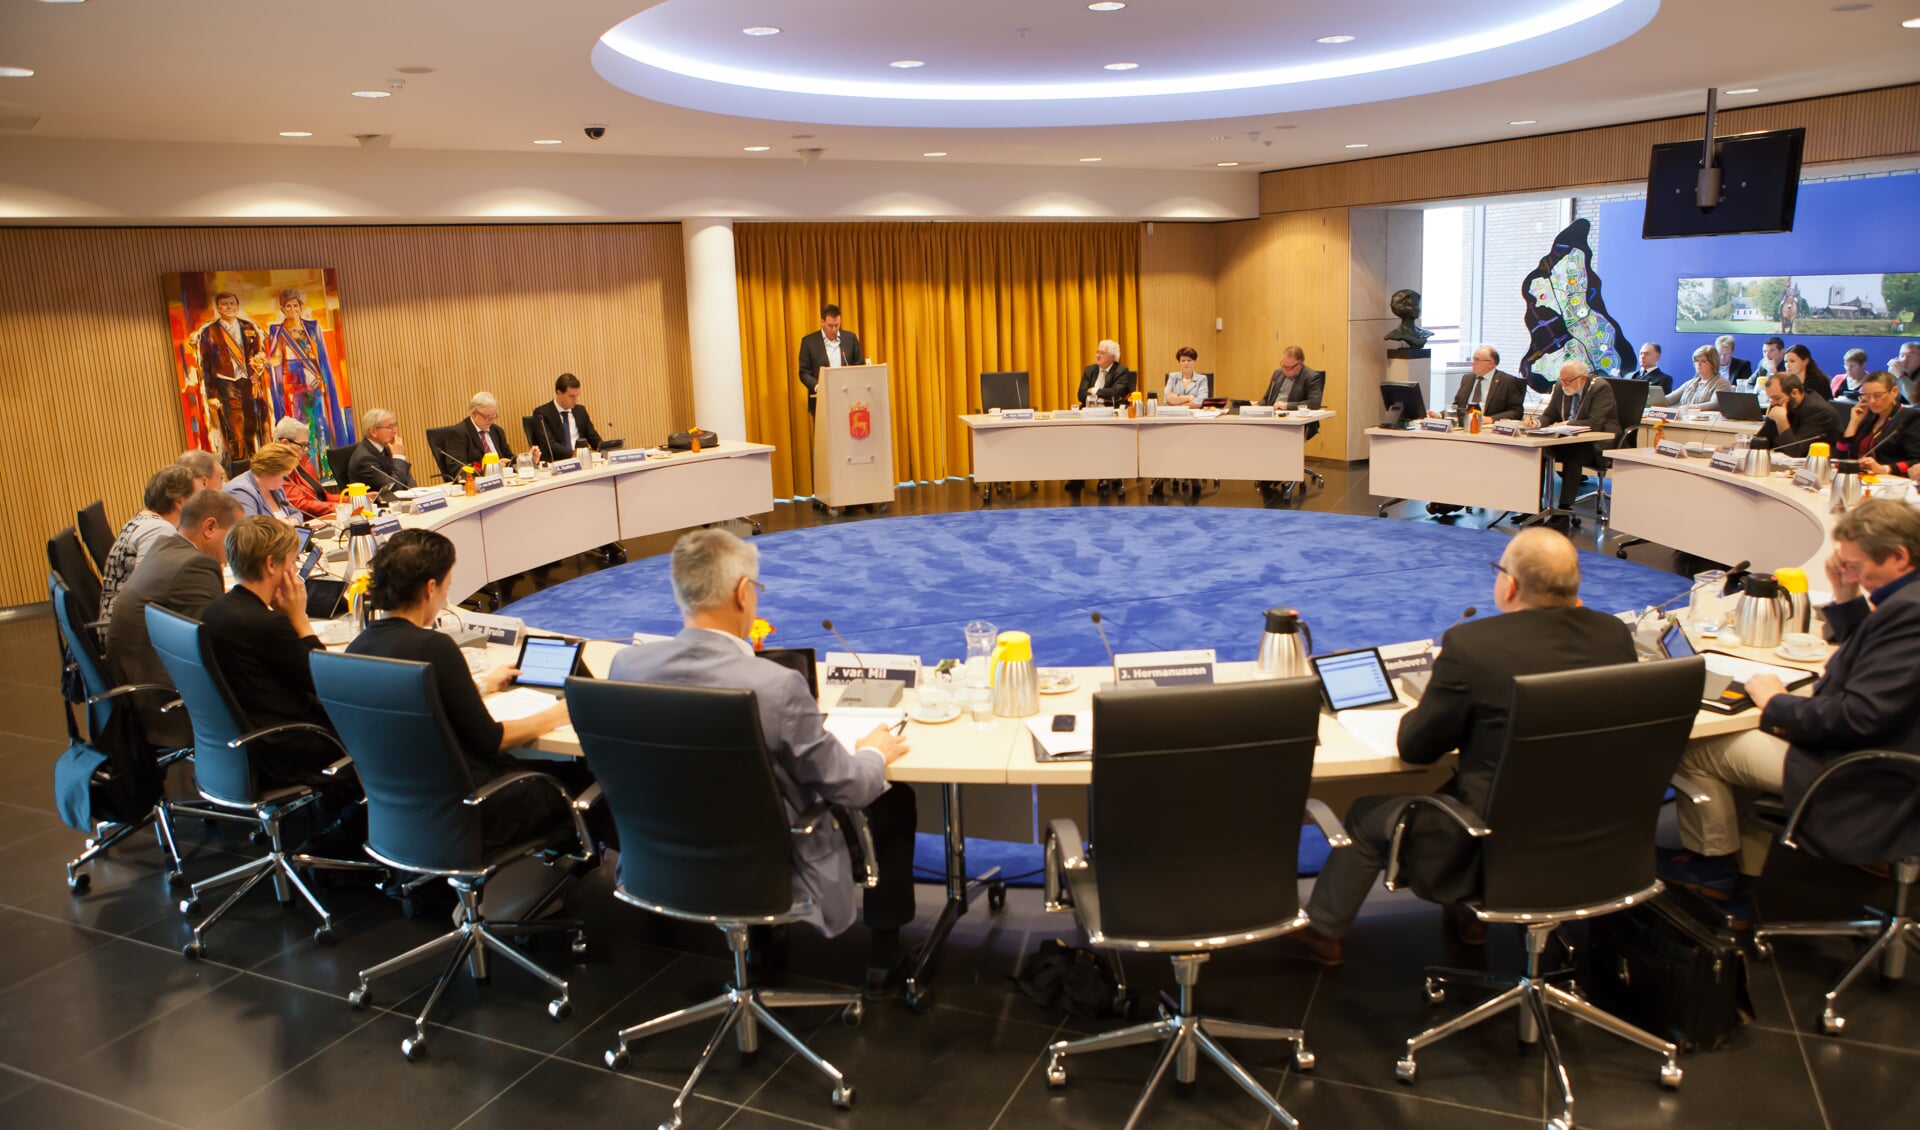 De gemeenteraad van Boxmeer wil één Land van Cuijk per 2019. (archieffoto: Diana Derks)